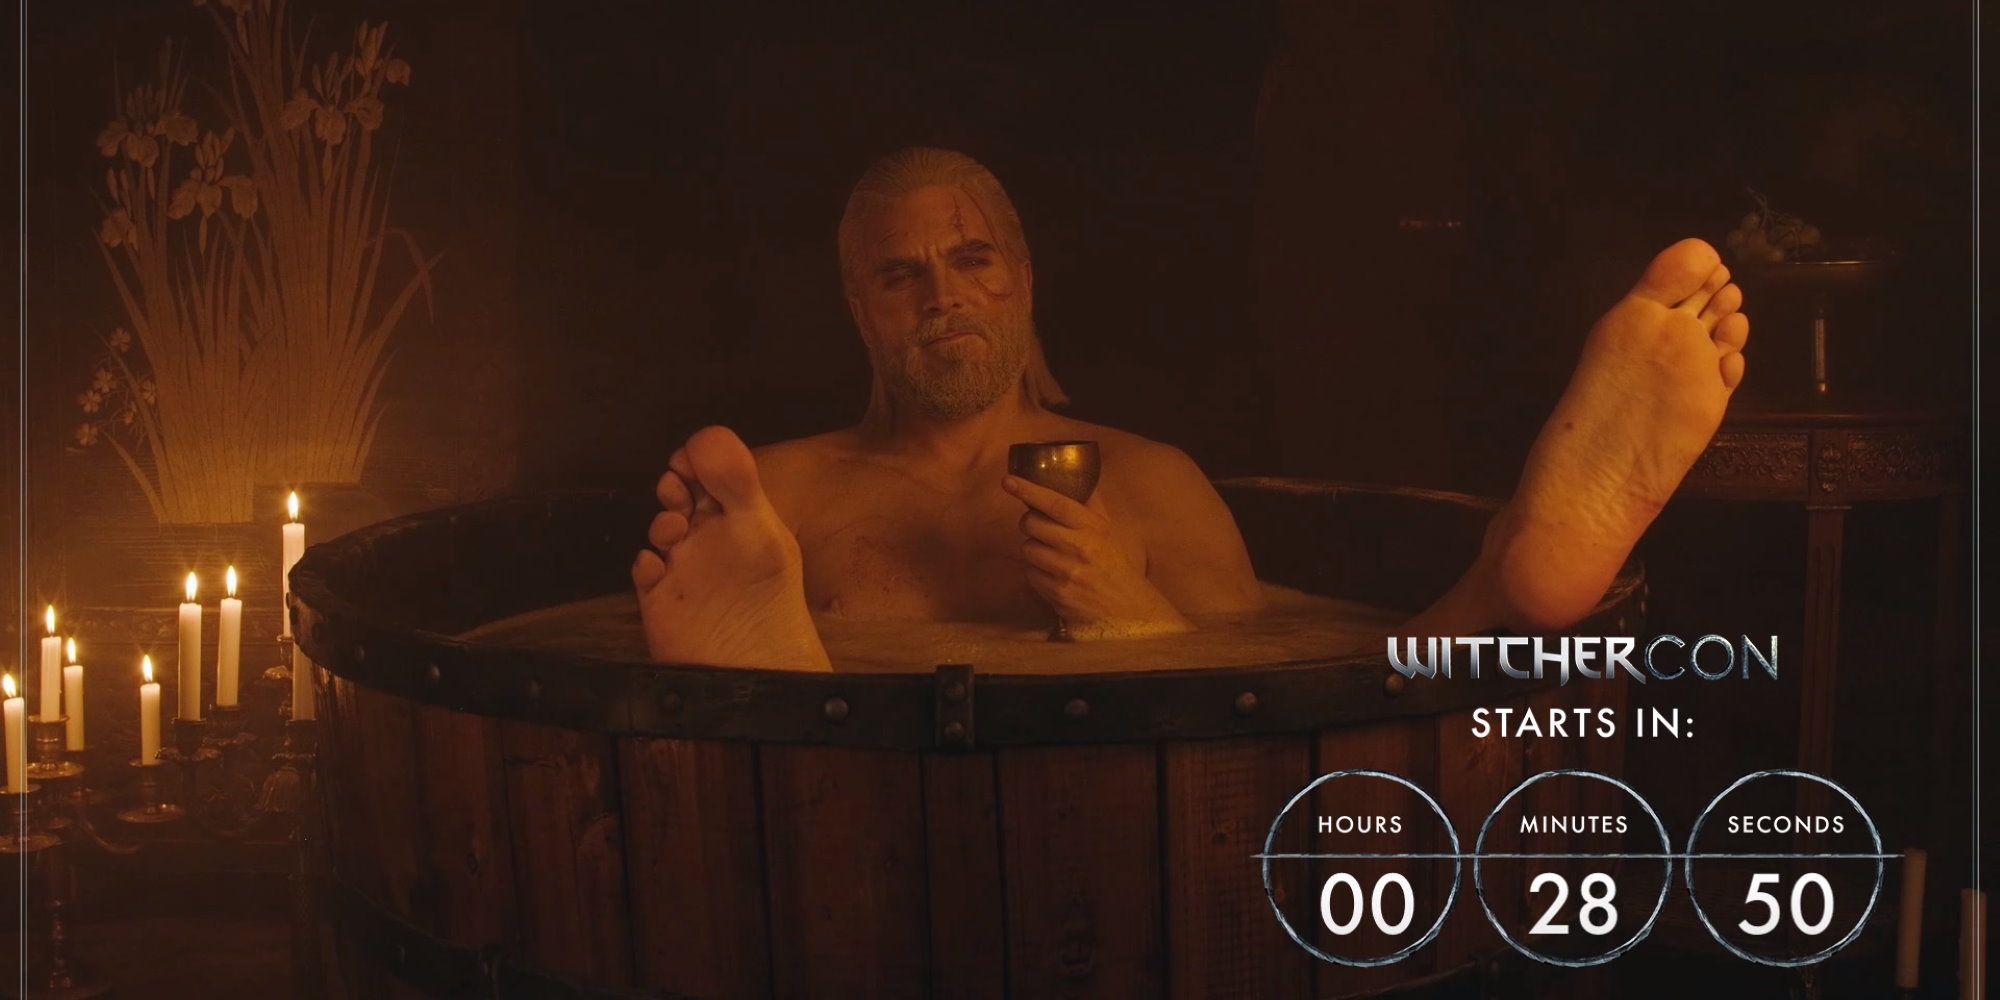 Bathtub Geralt Cosplay Is The Best Way To Start WitcherCon